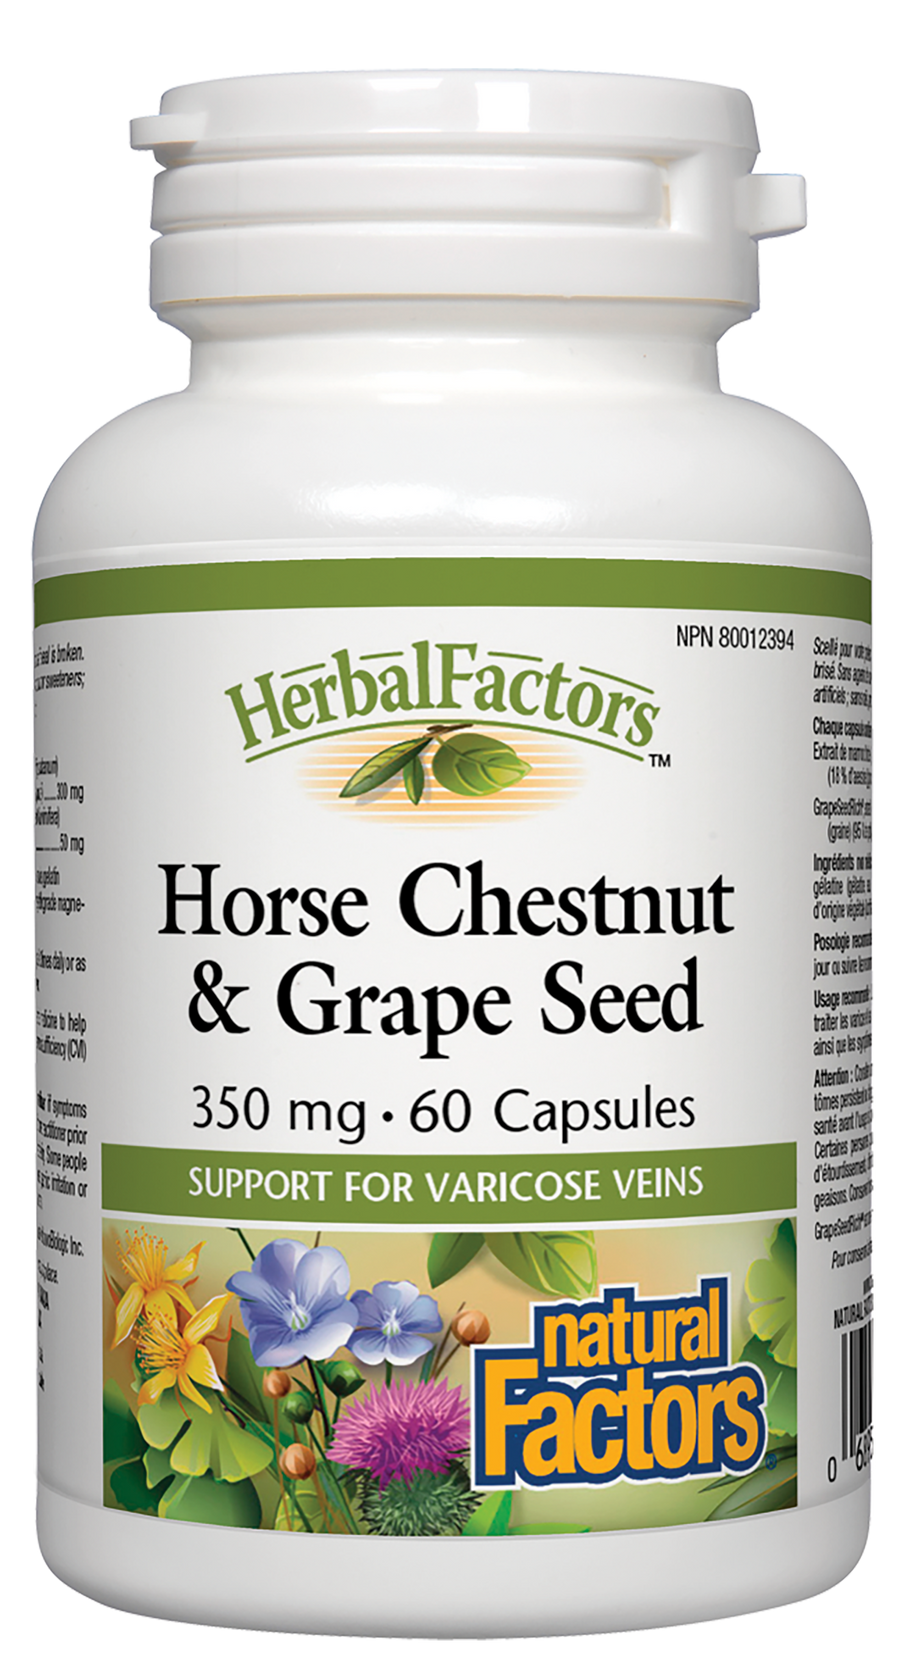 Natural Factors Horse Chestnut & Grape Seed, HerbalFactors 350mg 60 Capsules